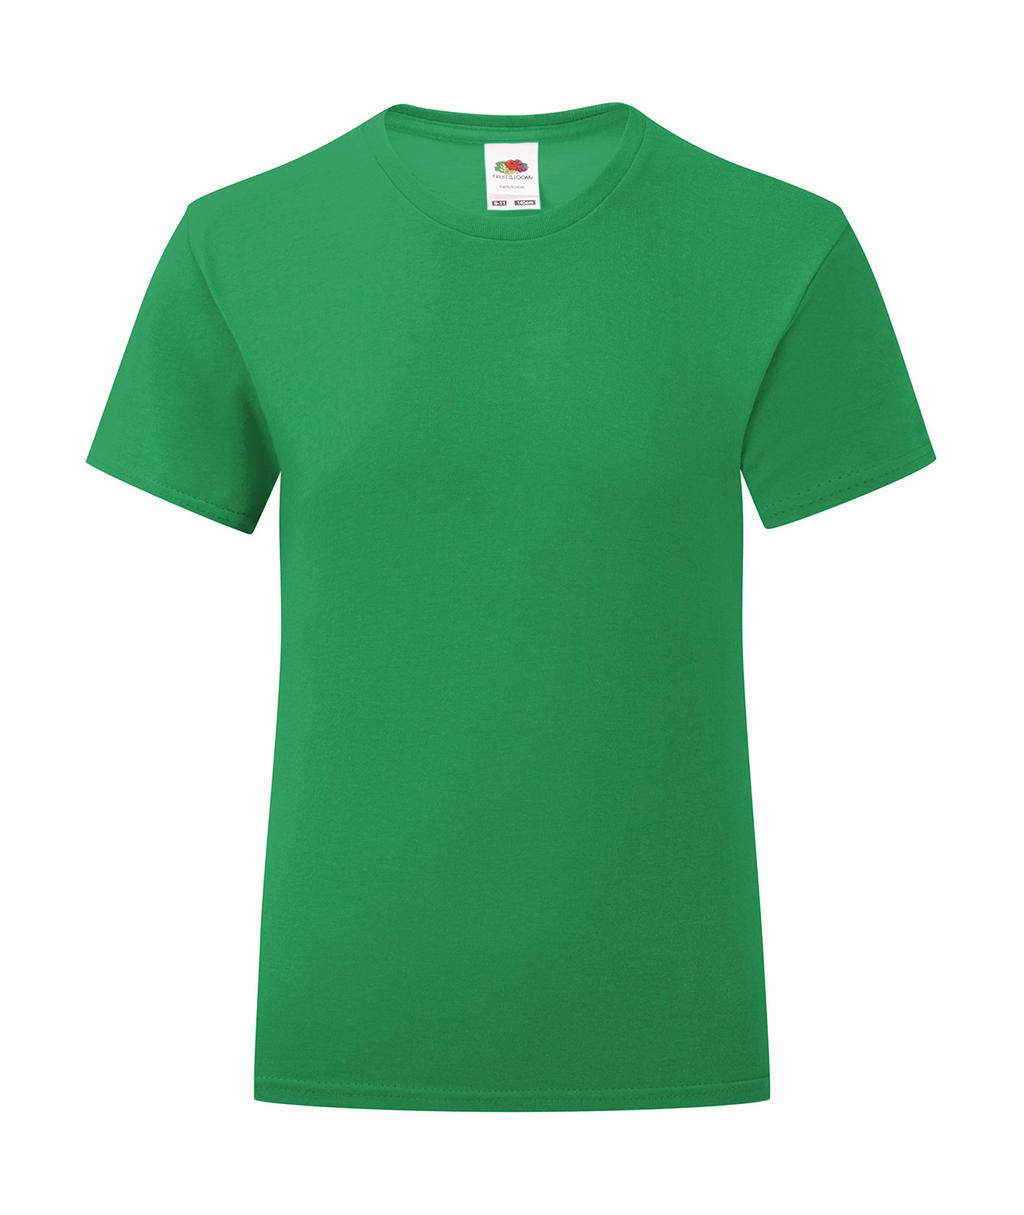 Dívčí tričko Iconic T 150 Barva: středně zelená, Velikost: 7-8 let